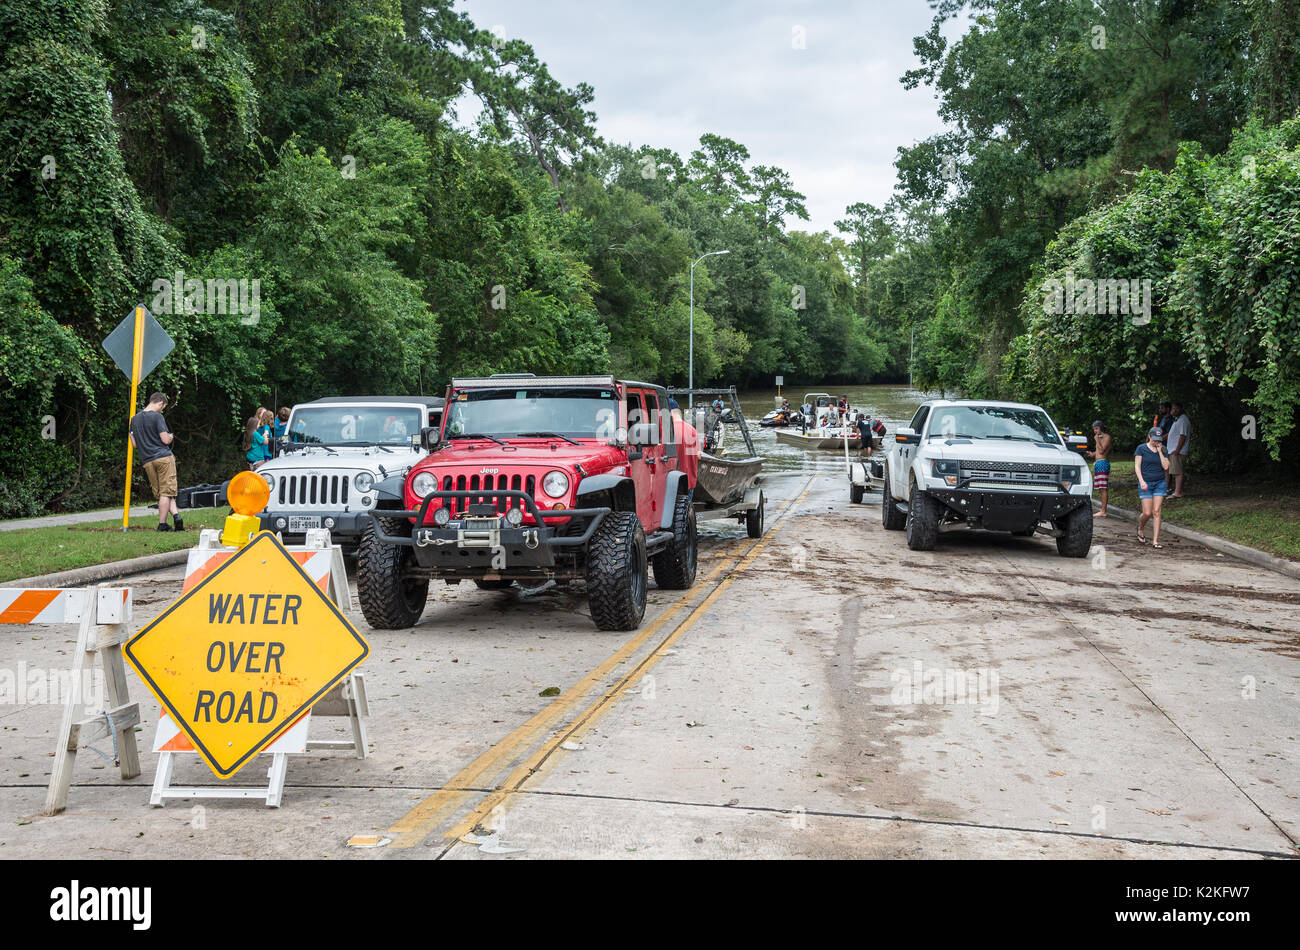 Houston, Texas. 30 Aug, 2017. Freiwillige Durchführung Rescue Mission in historische Hochwasser in Houston, Texas nach Hurrikan Harvey. August 2017. Credit: Gabbro/Alamy leben Nachrichten Stockfoto